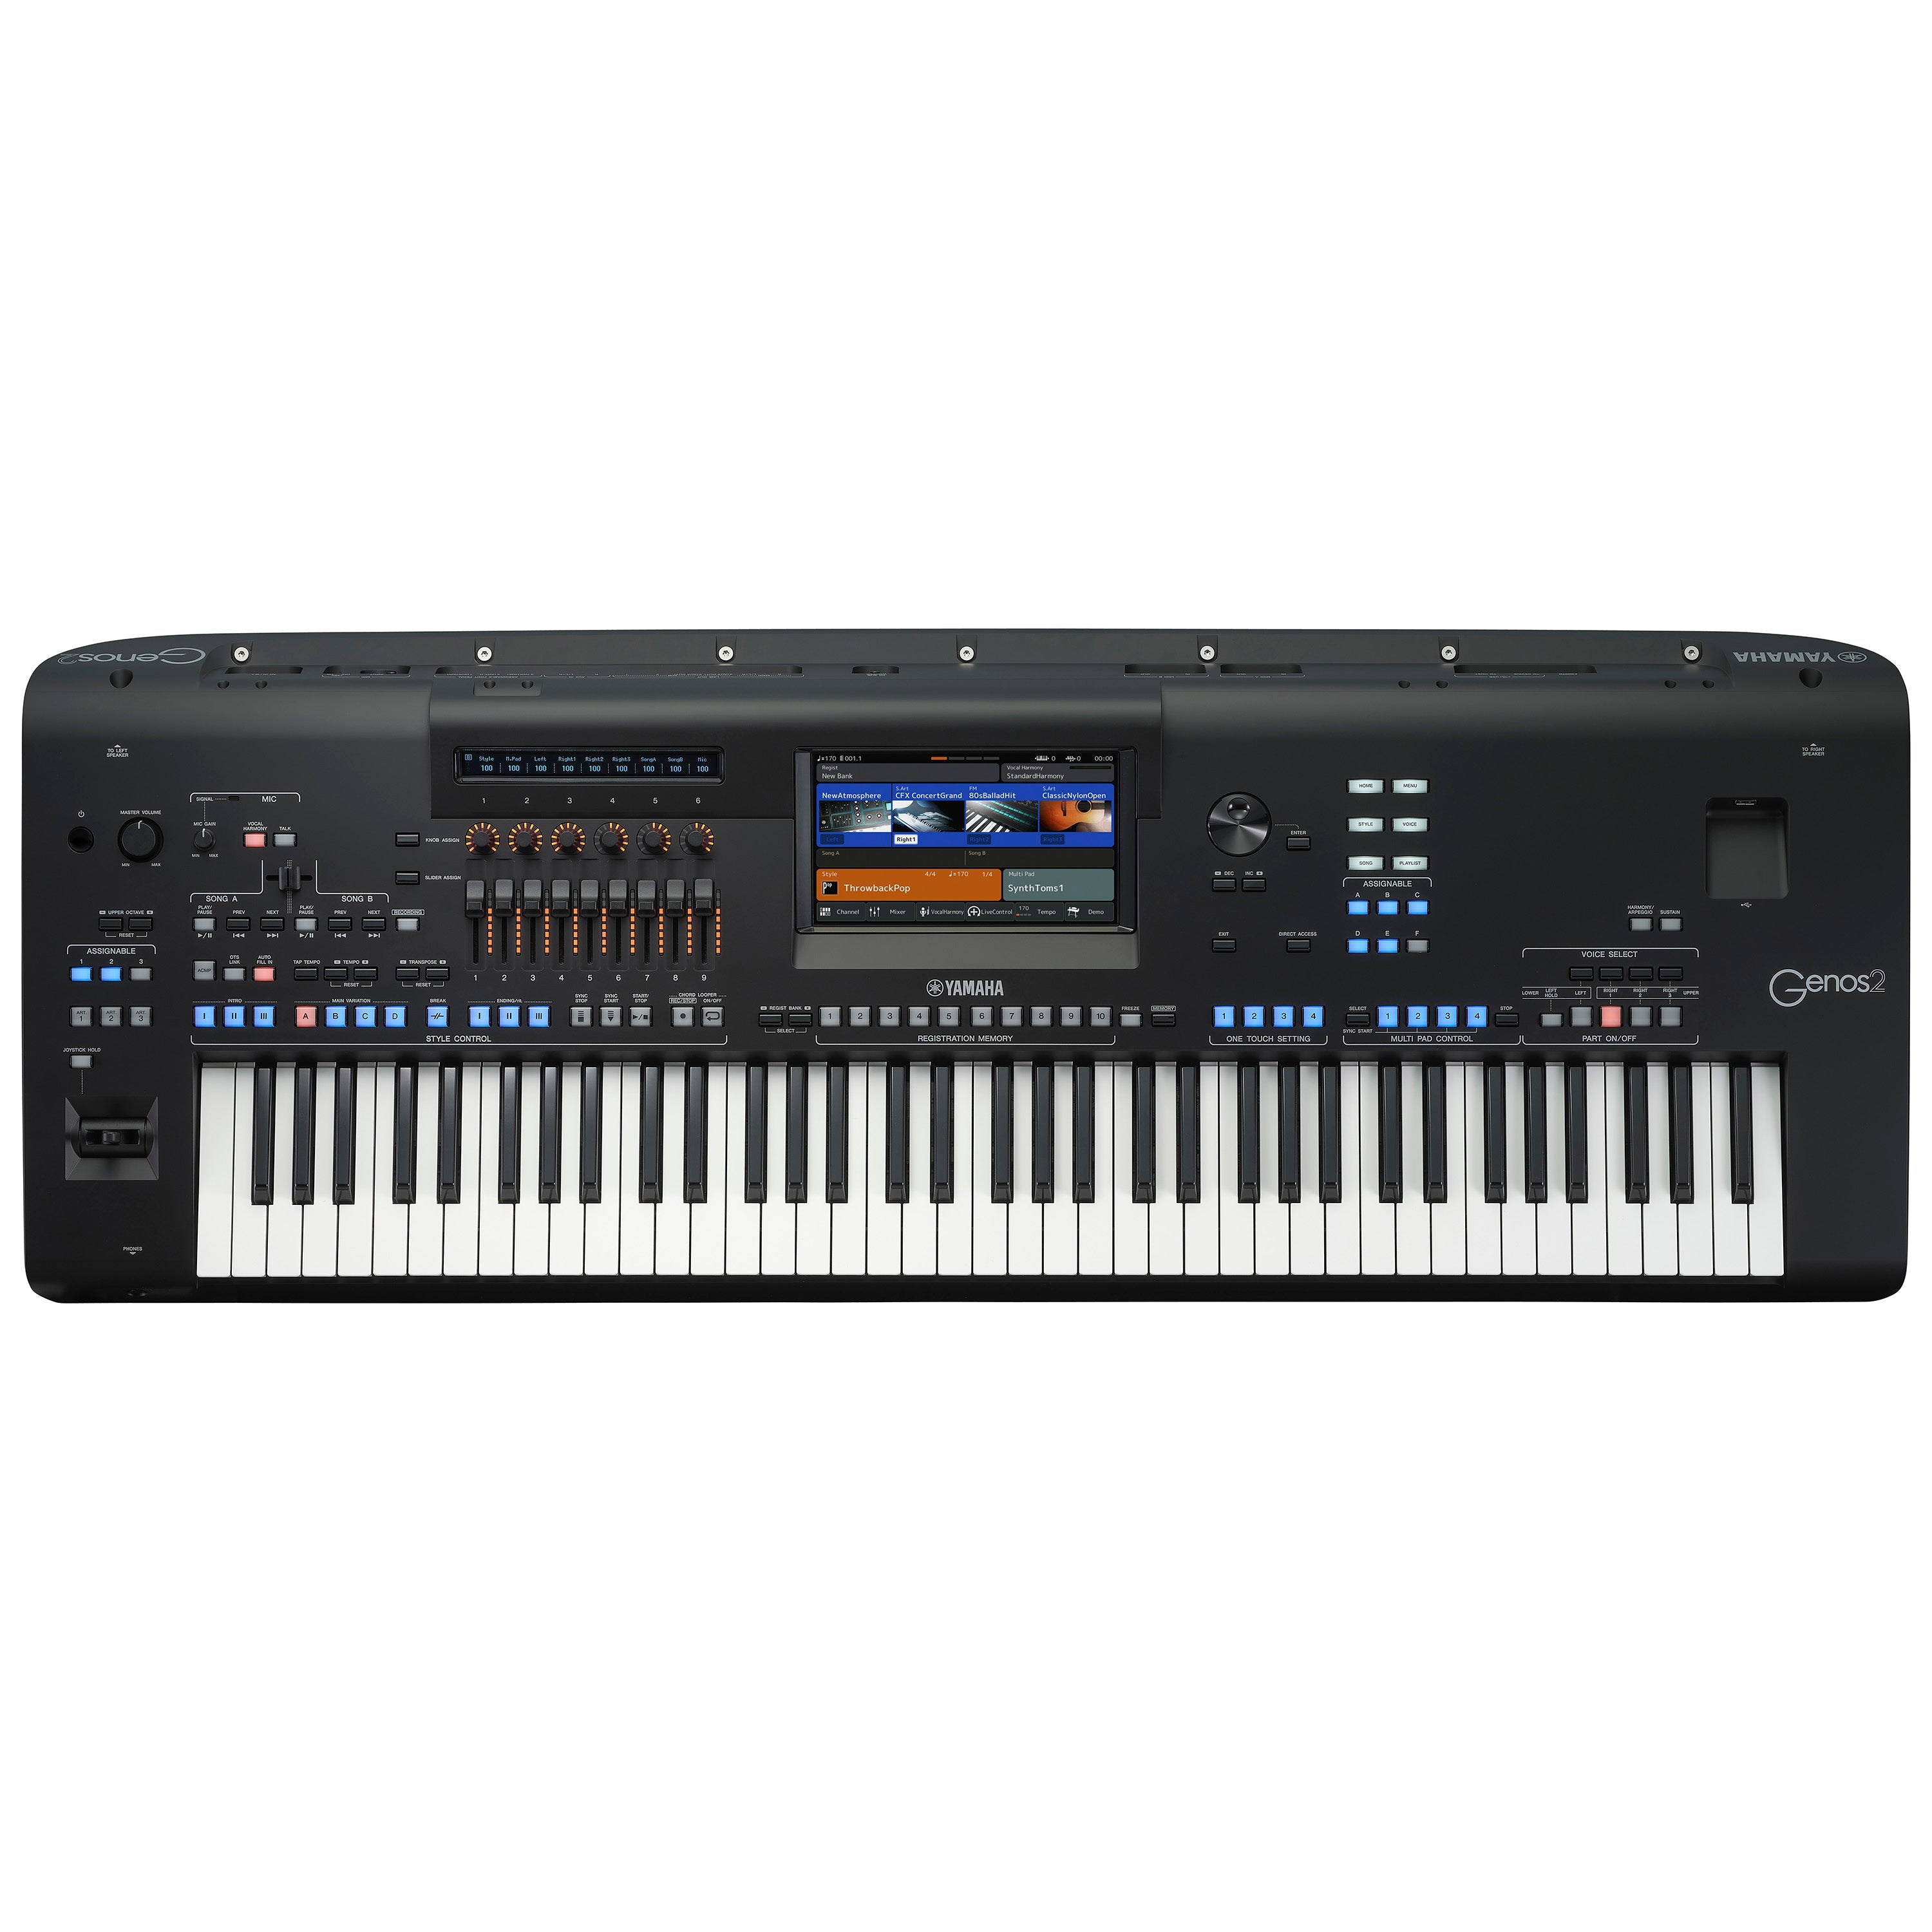 Yamaha Genos2 76-key Arranger Workstation Keyboard HOME ESSENTIALS BUNDLE